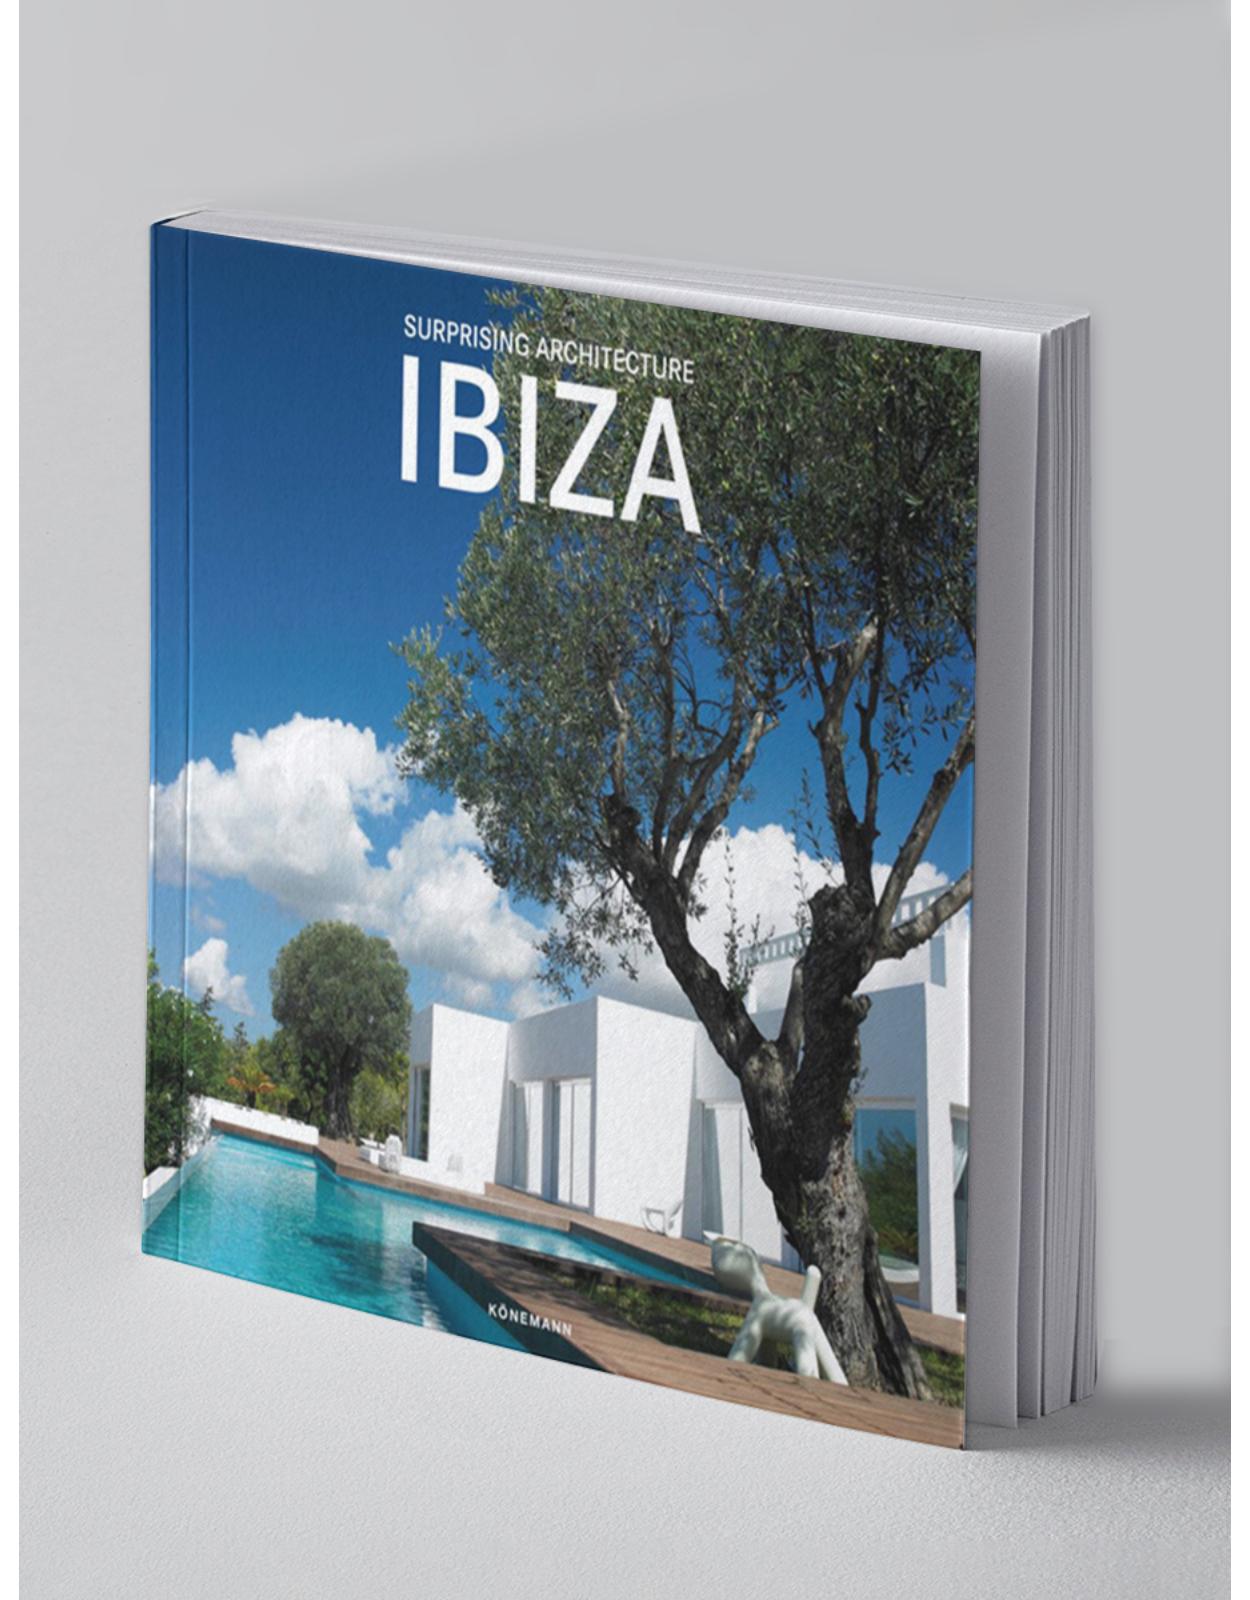 Suprising Ibiza Architecture